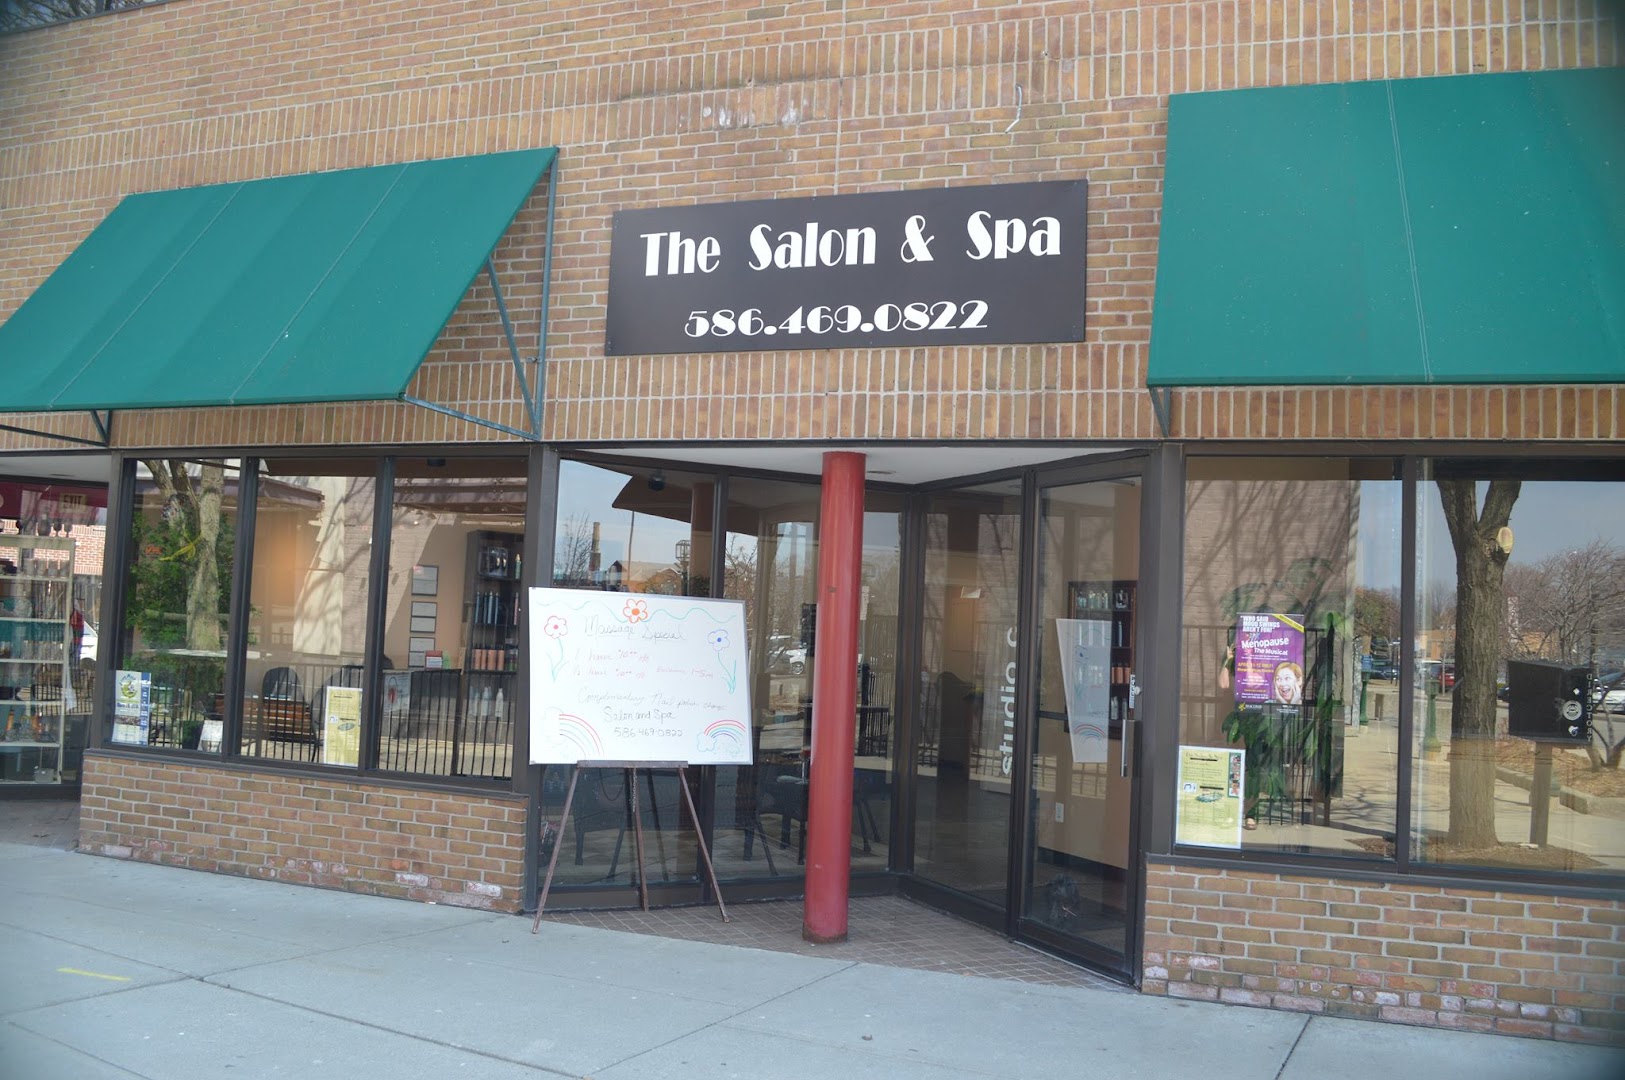 The Salon & Spa